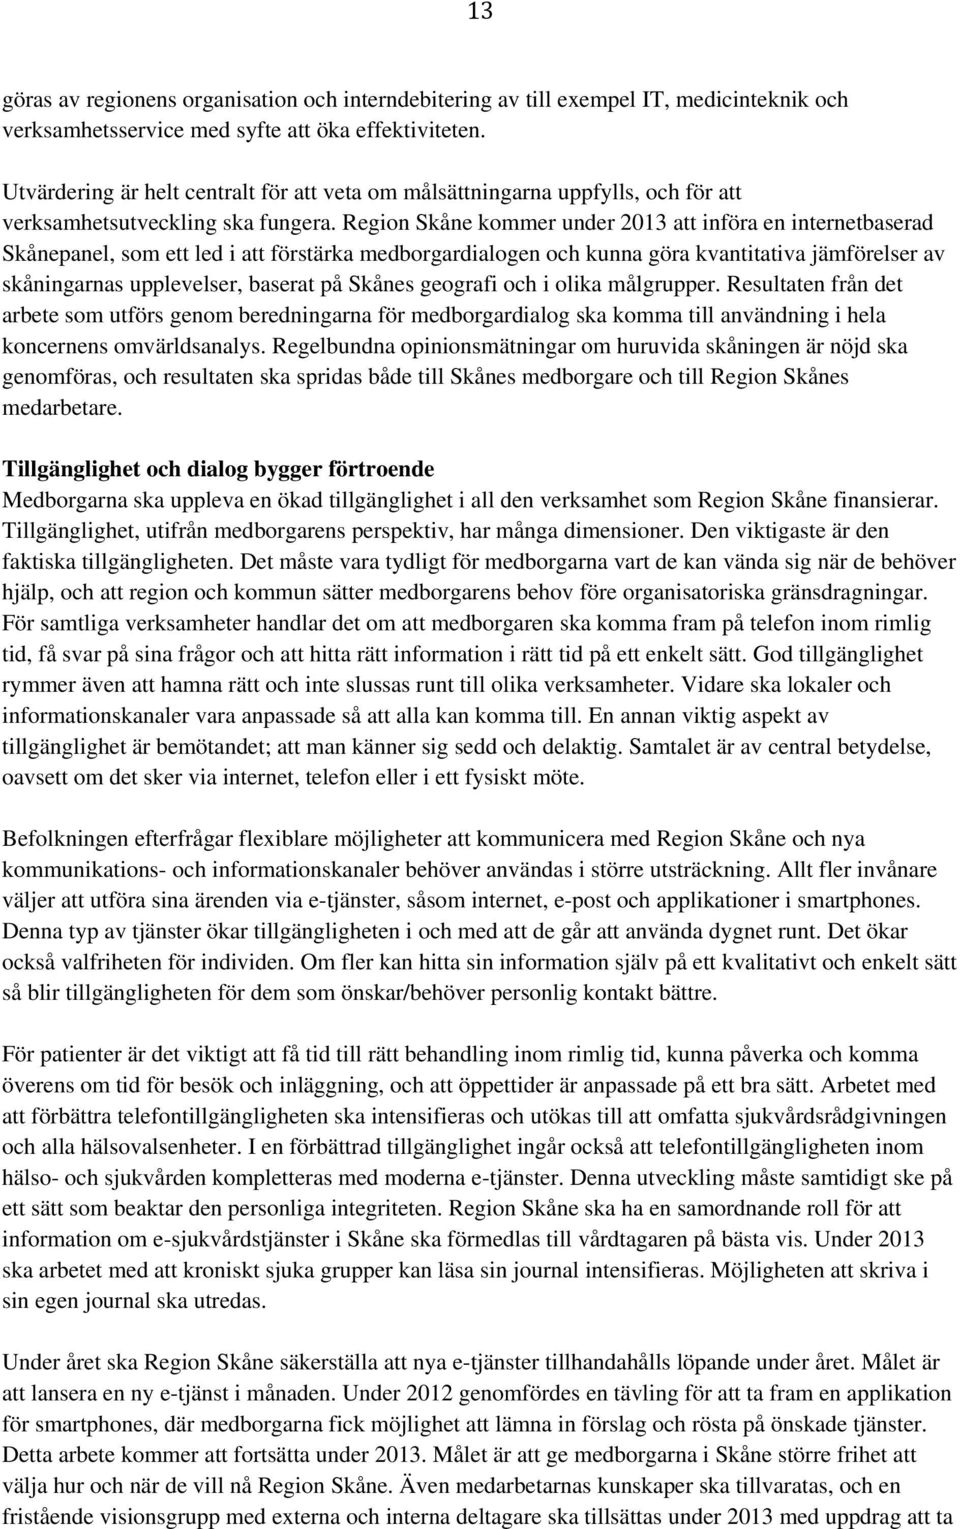 Region Skåne kommer under 2013 att införa en internetbaserad Skånepanel, som ett led i att förstärka medborgardialogen och kunna göra kvantitativa jämförelser av skåningarnas upplevelser, baserat på